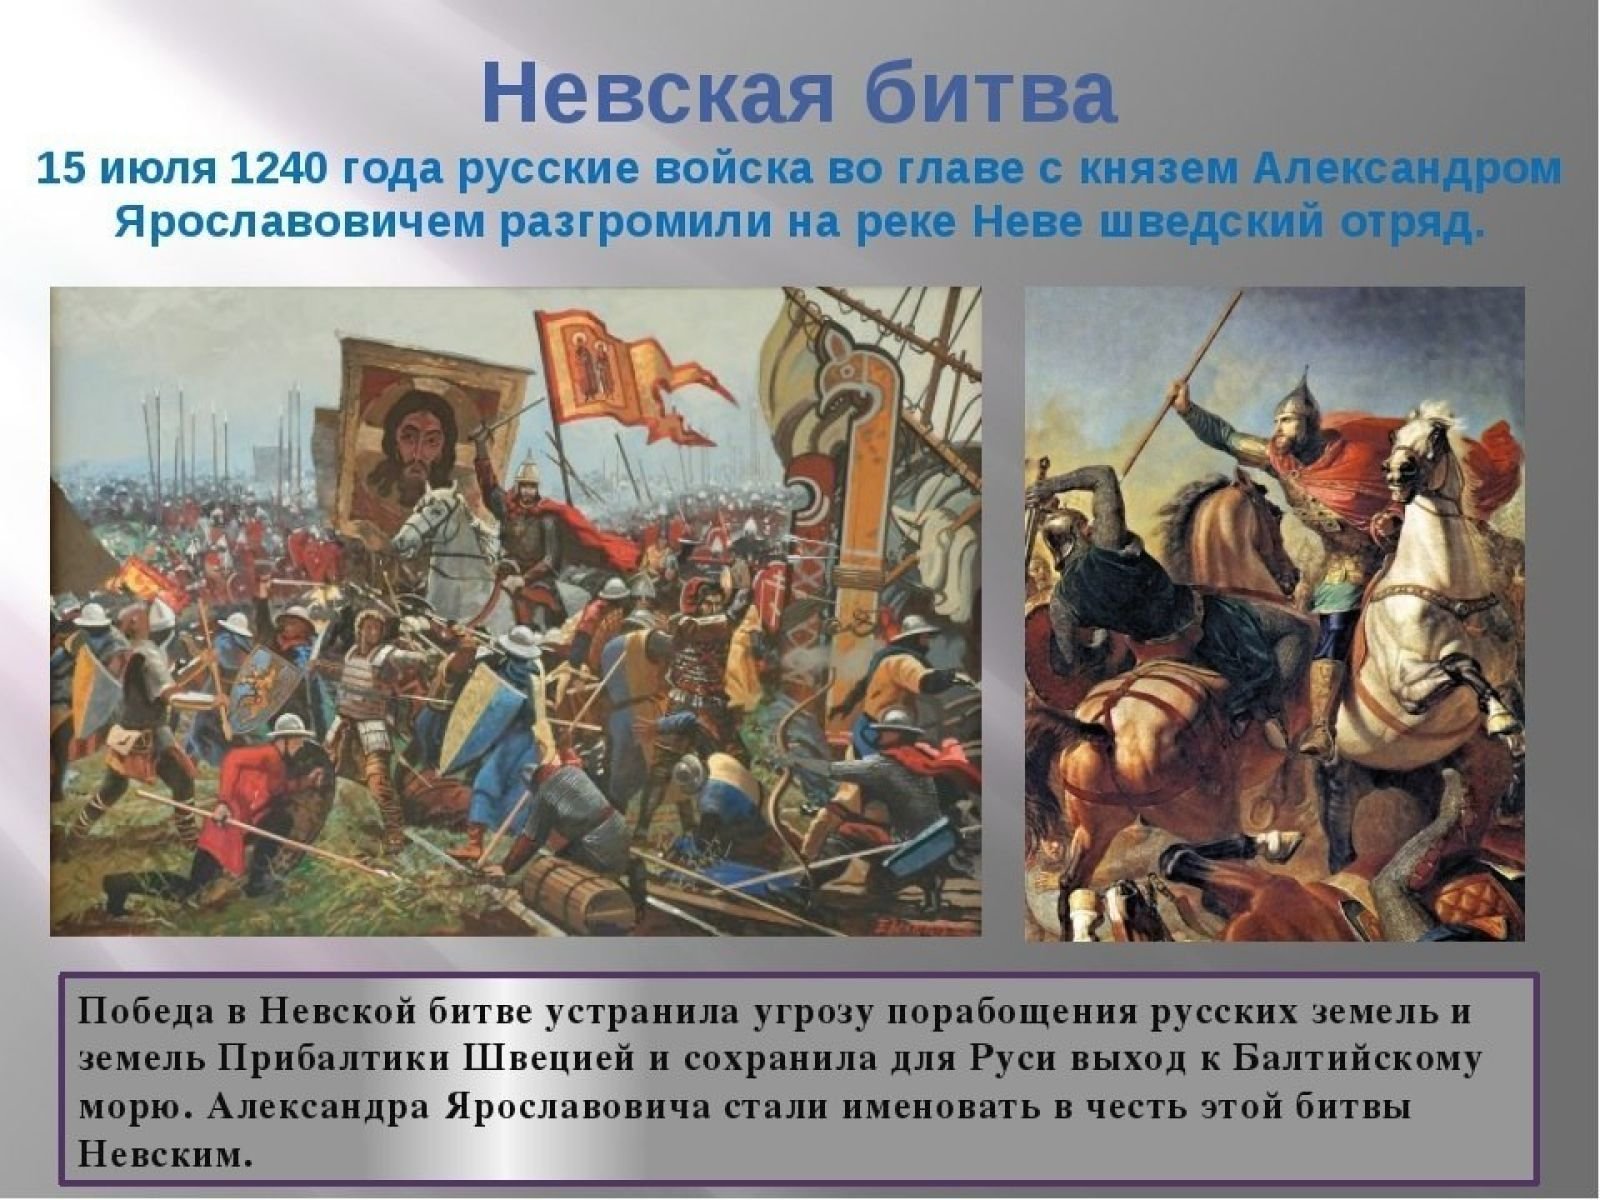 Почему победили русские войска. 15 Июля 1240 г. русские войска разбили Шведов в Невской битве. 15 Июля 1240 года состоялась Невская битва..